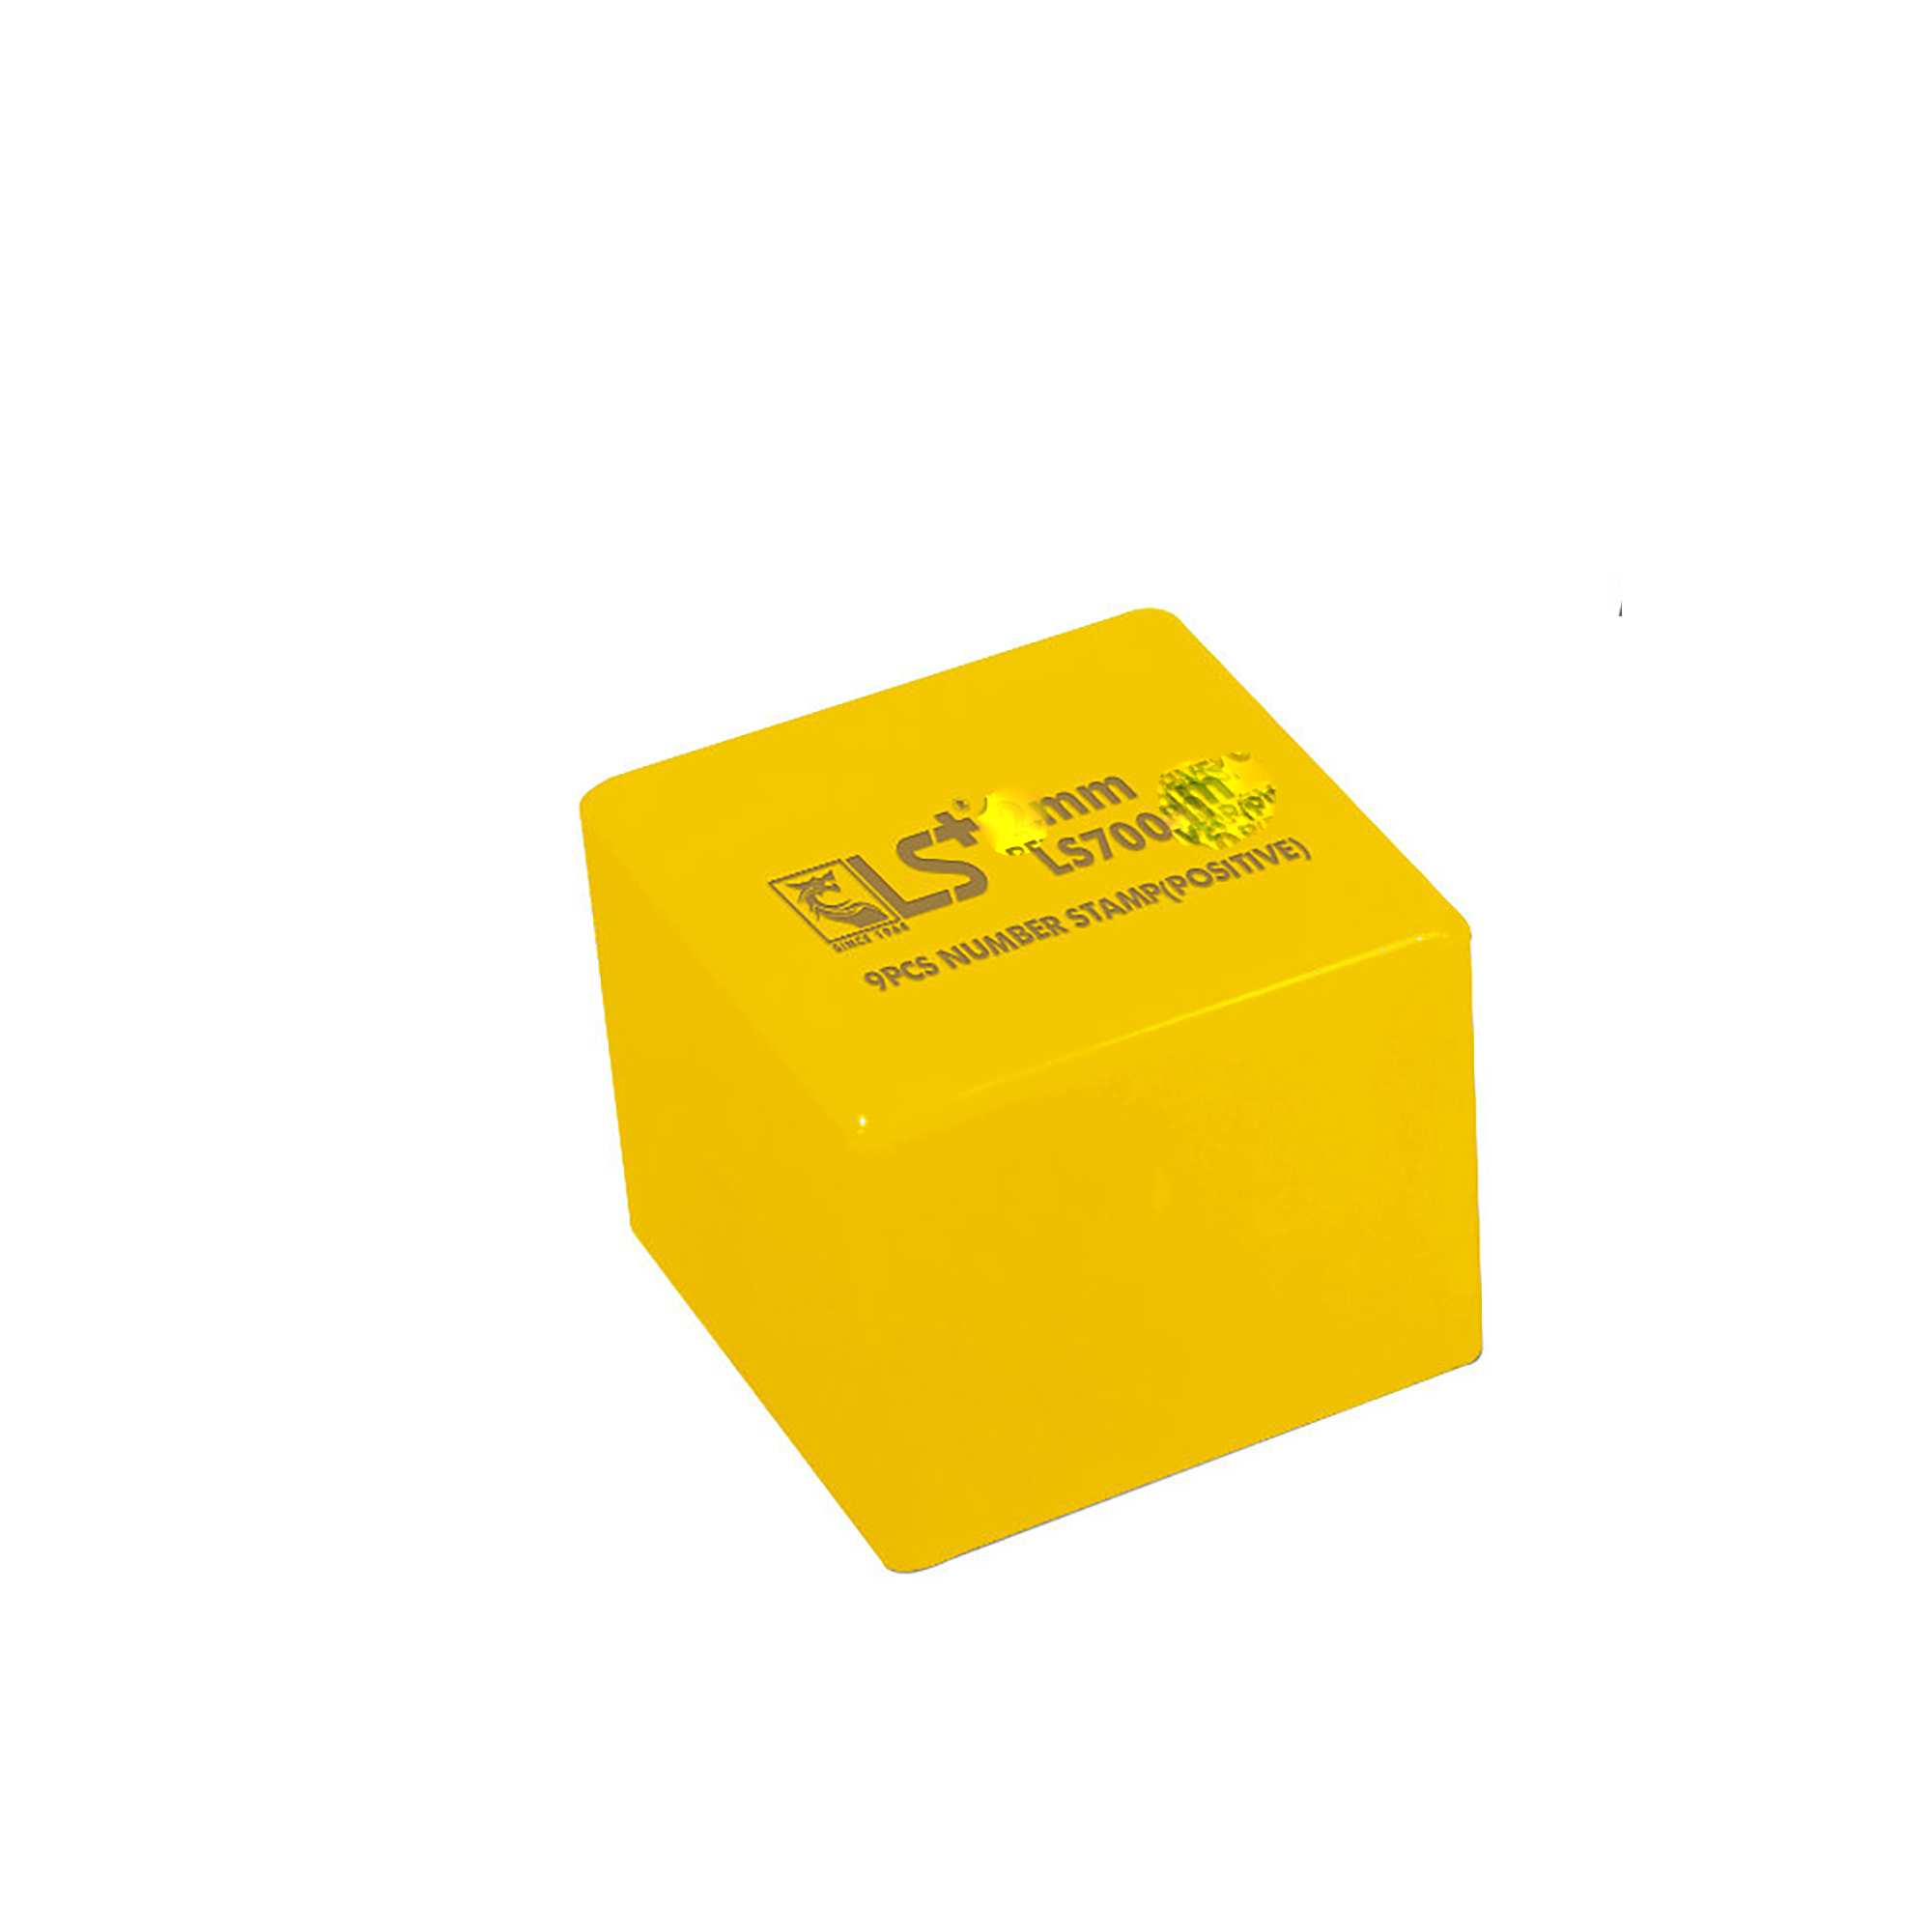 Hình ảnh 1 của mặt hàng Đóng Số Bộ 9pcs Xuôi 4mm LS - hộp vàng